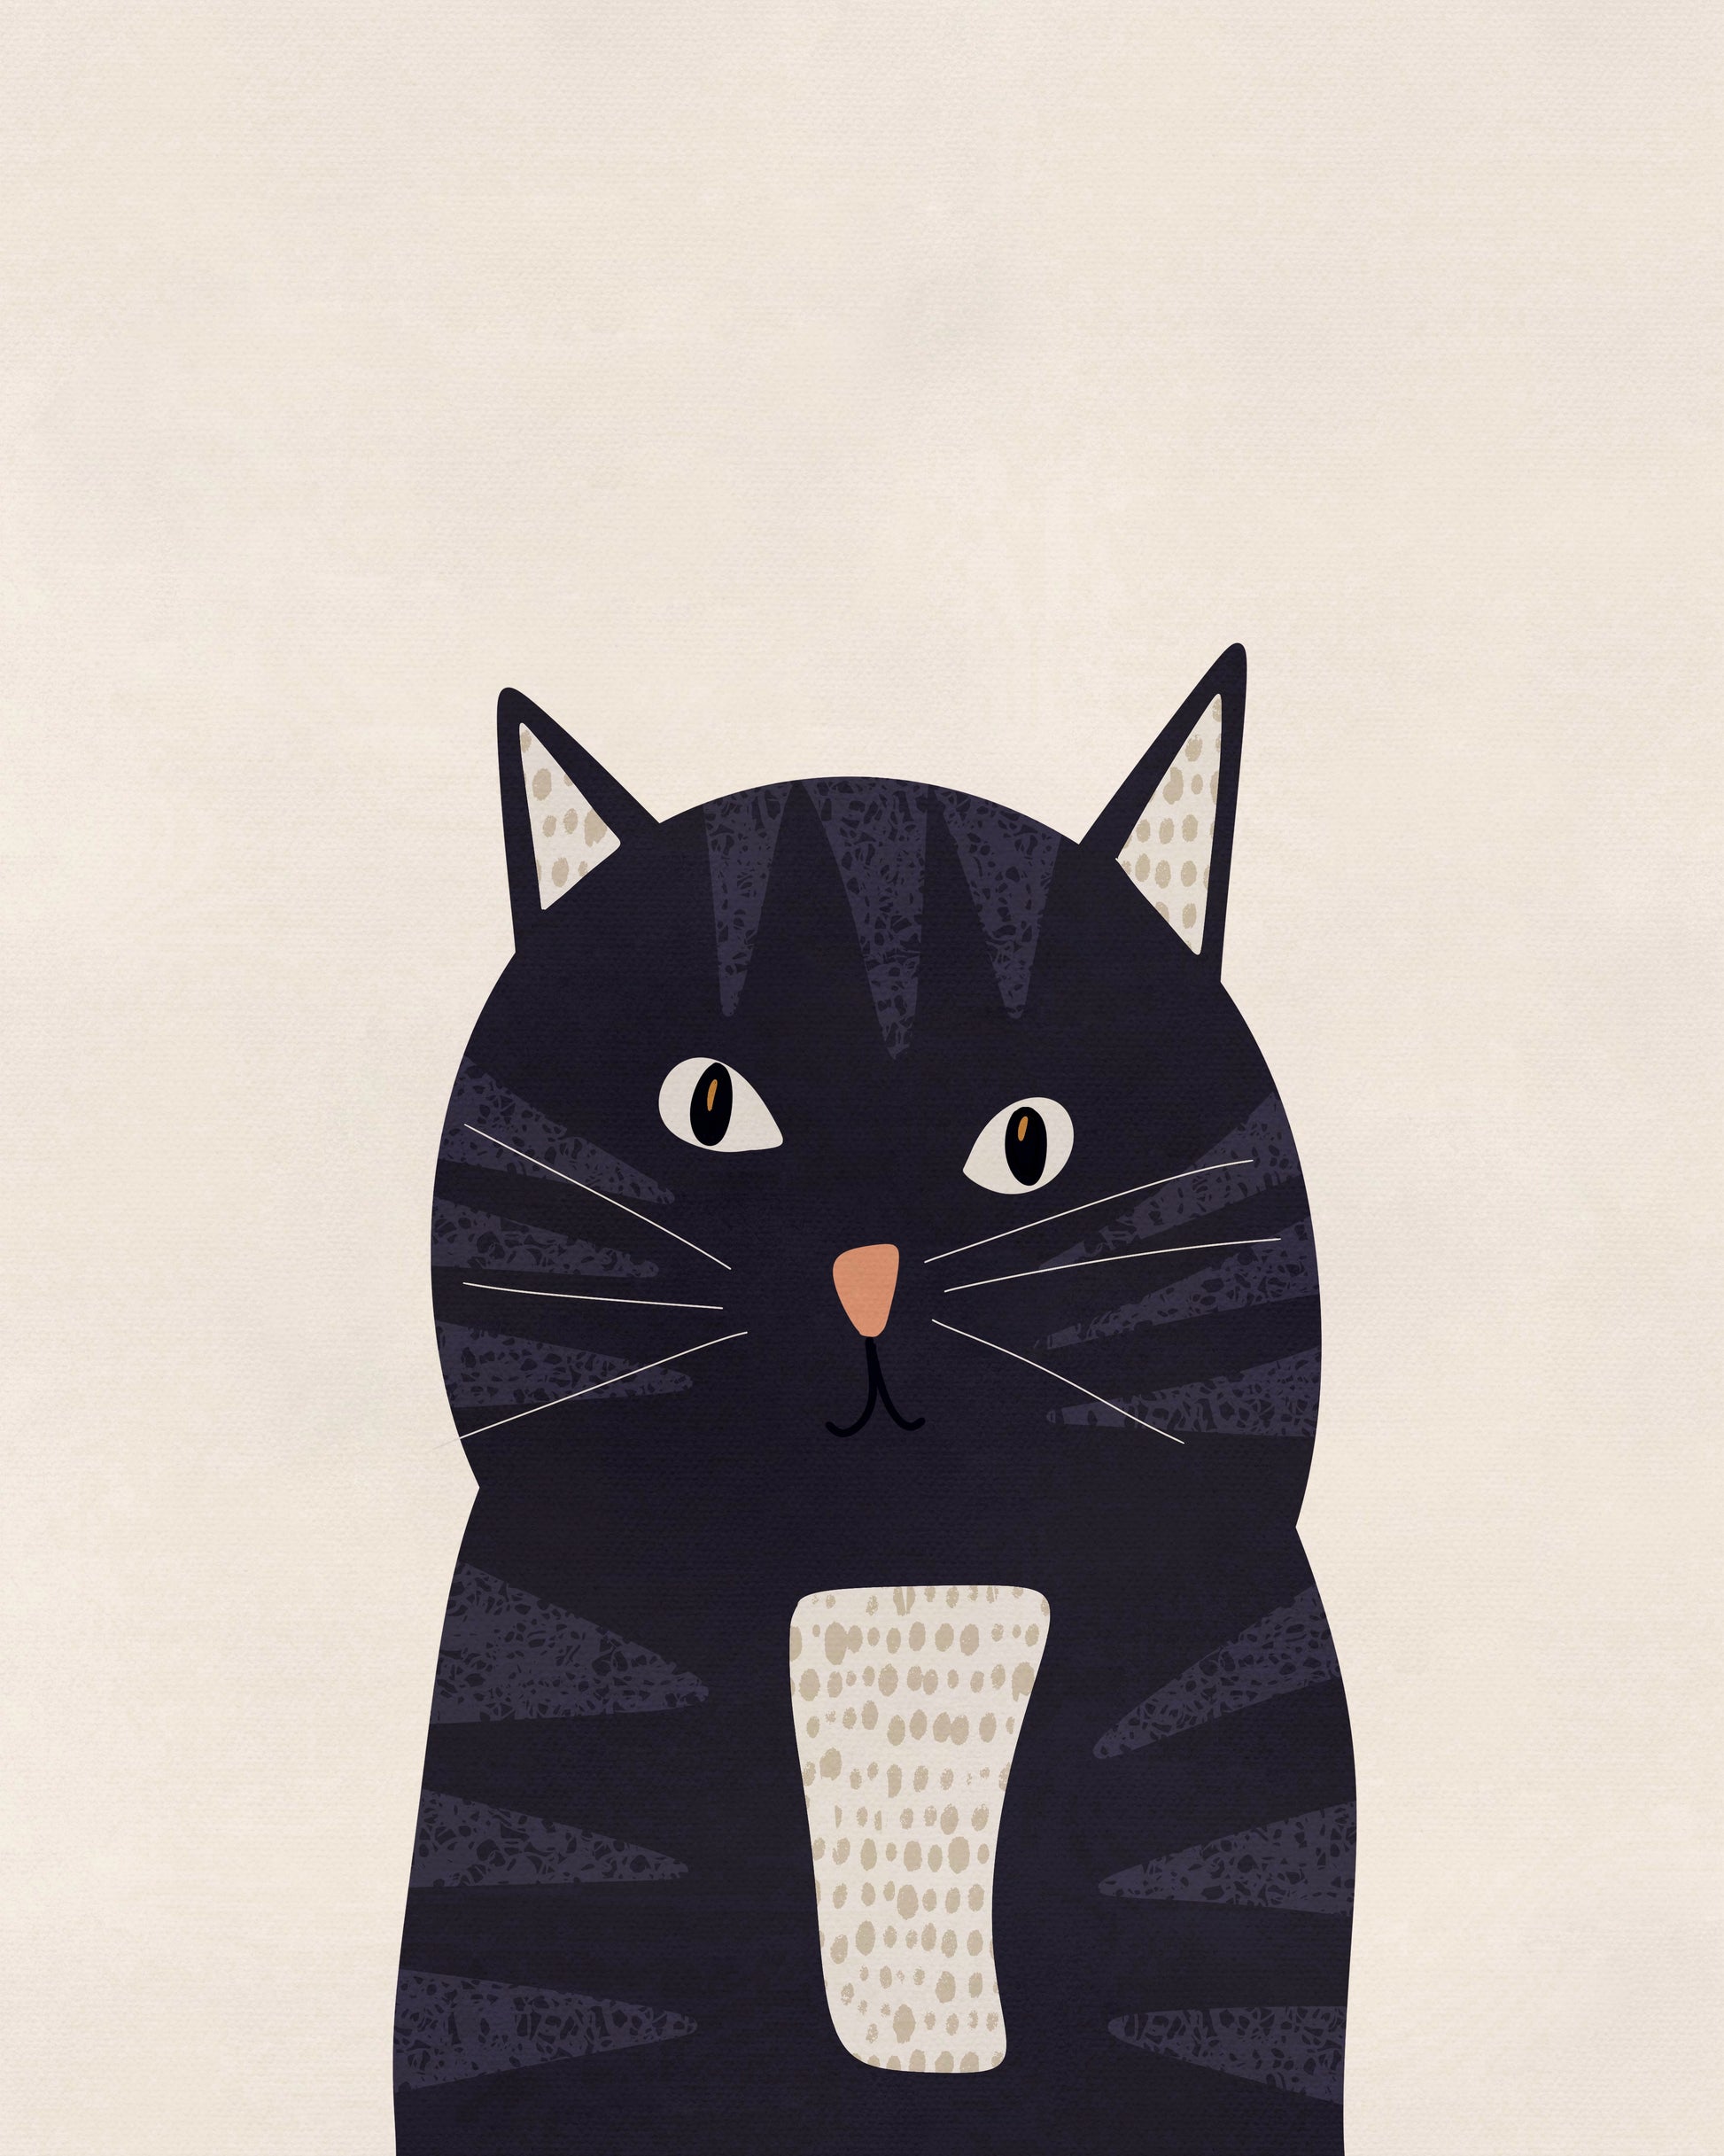 Randig katt i grafiska former, illustrerad av Tove Malm för barnrum